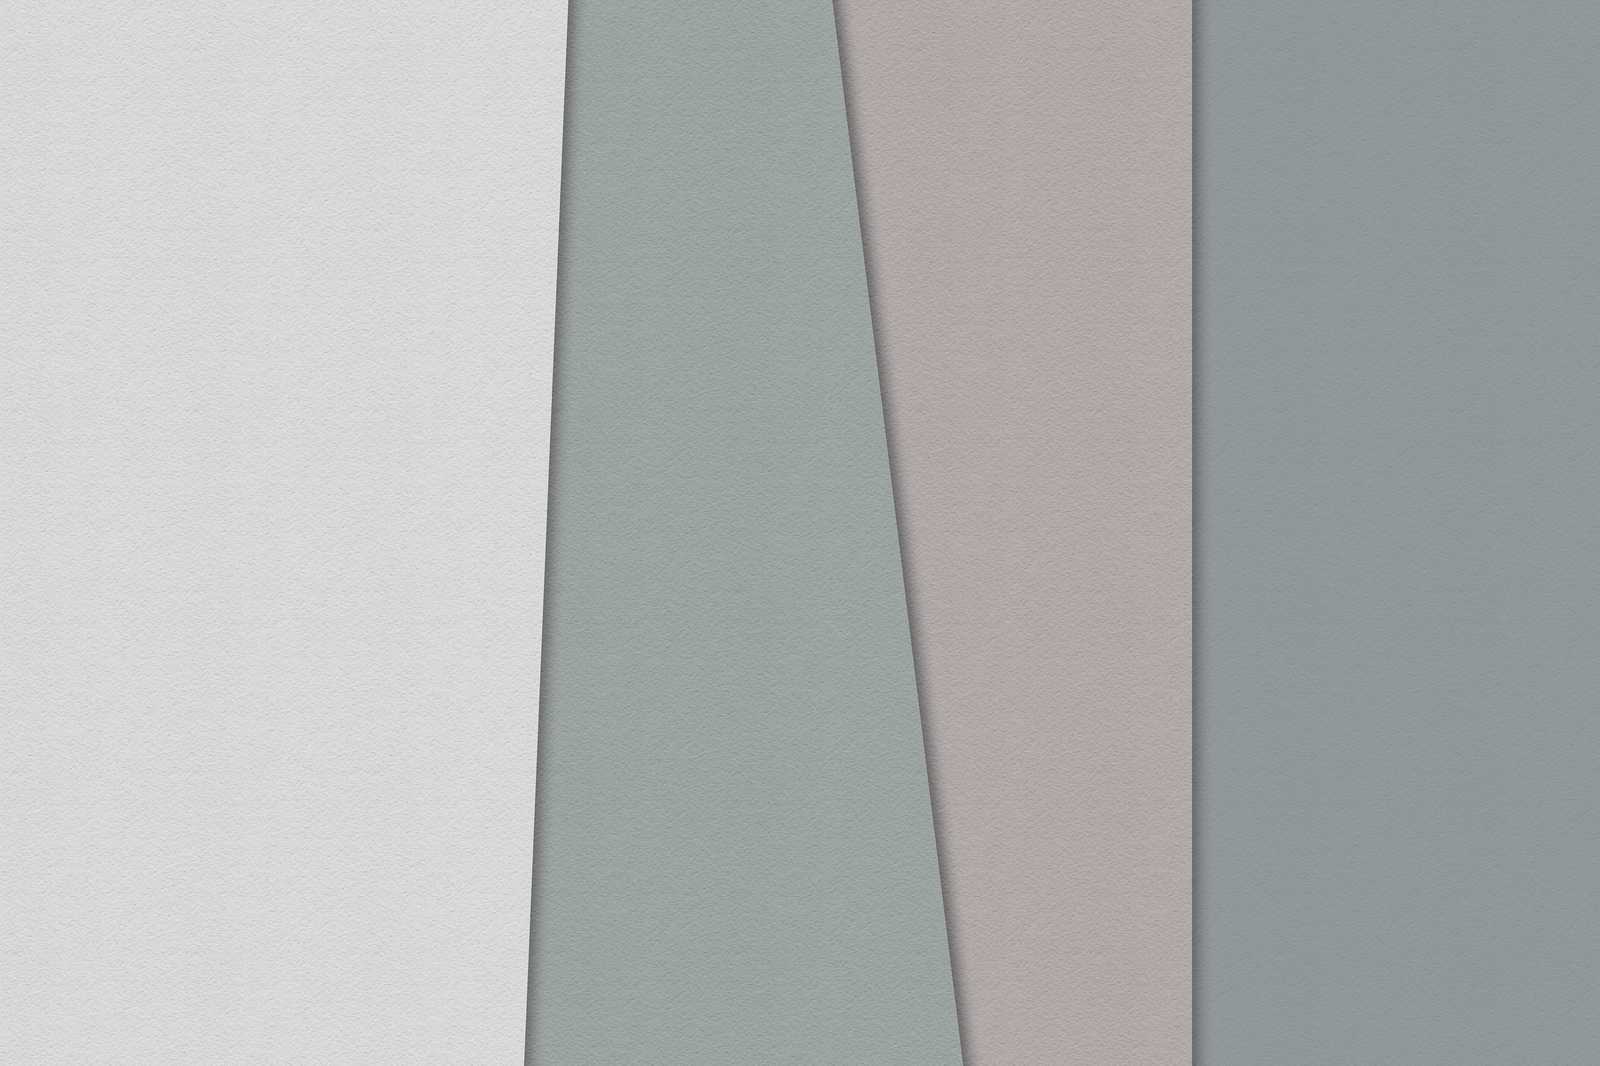             Papel estratificado 1 - Pintura gráfica sobre lienzo con zonas de color en estructura de papel hecho a mano - 0,90 m x 0,60 m
        